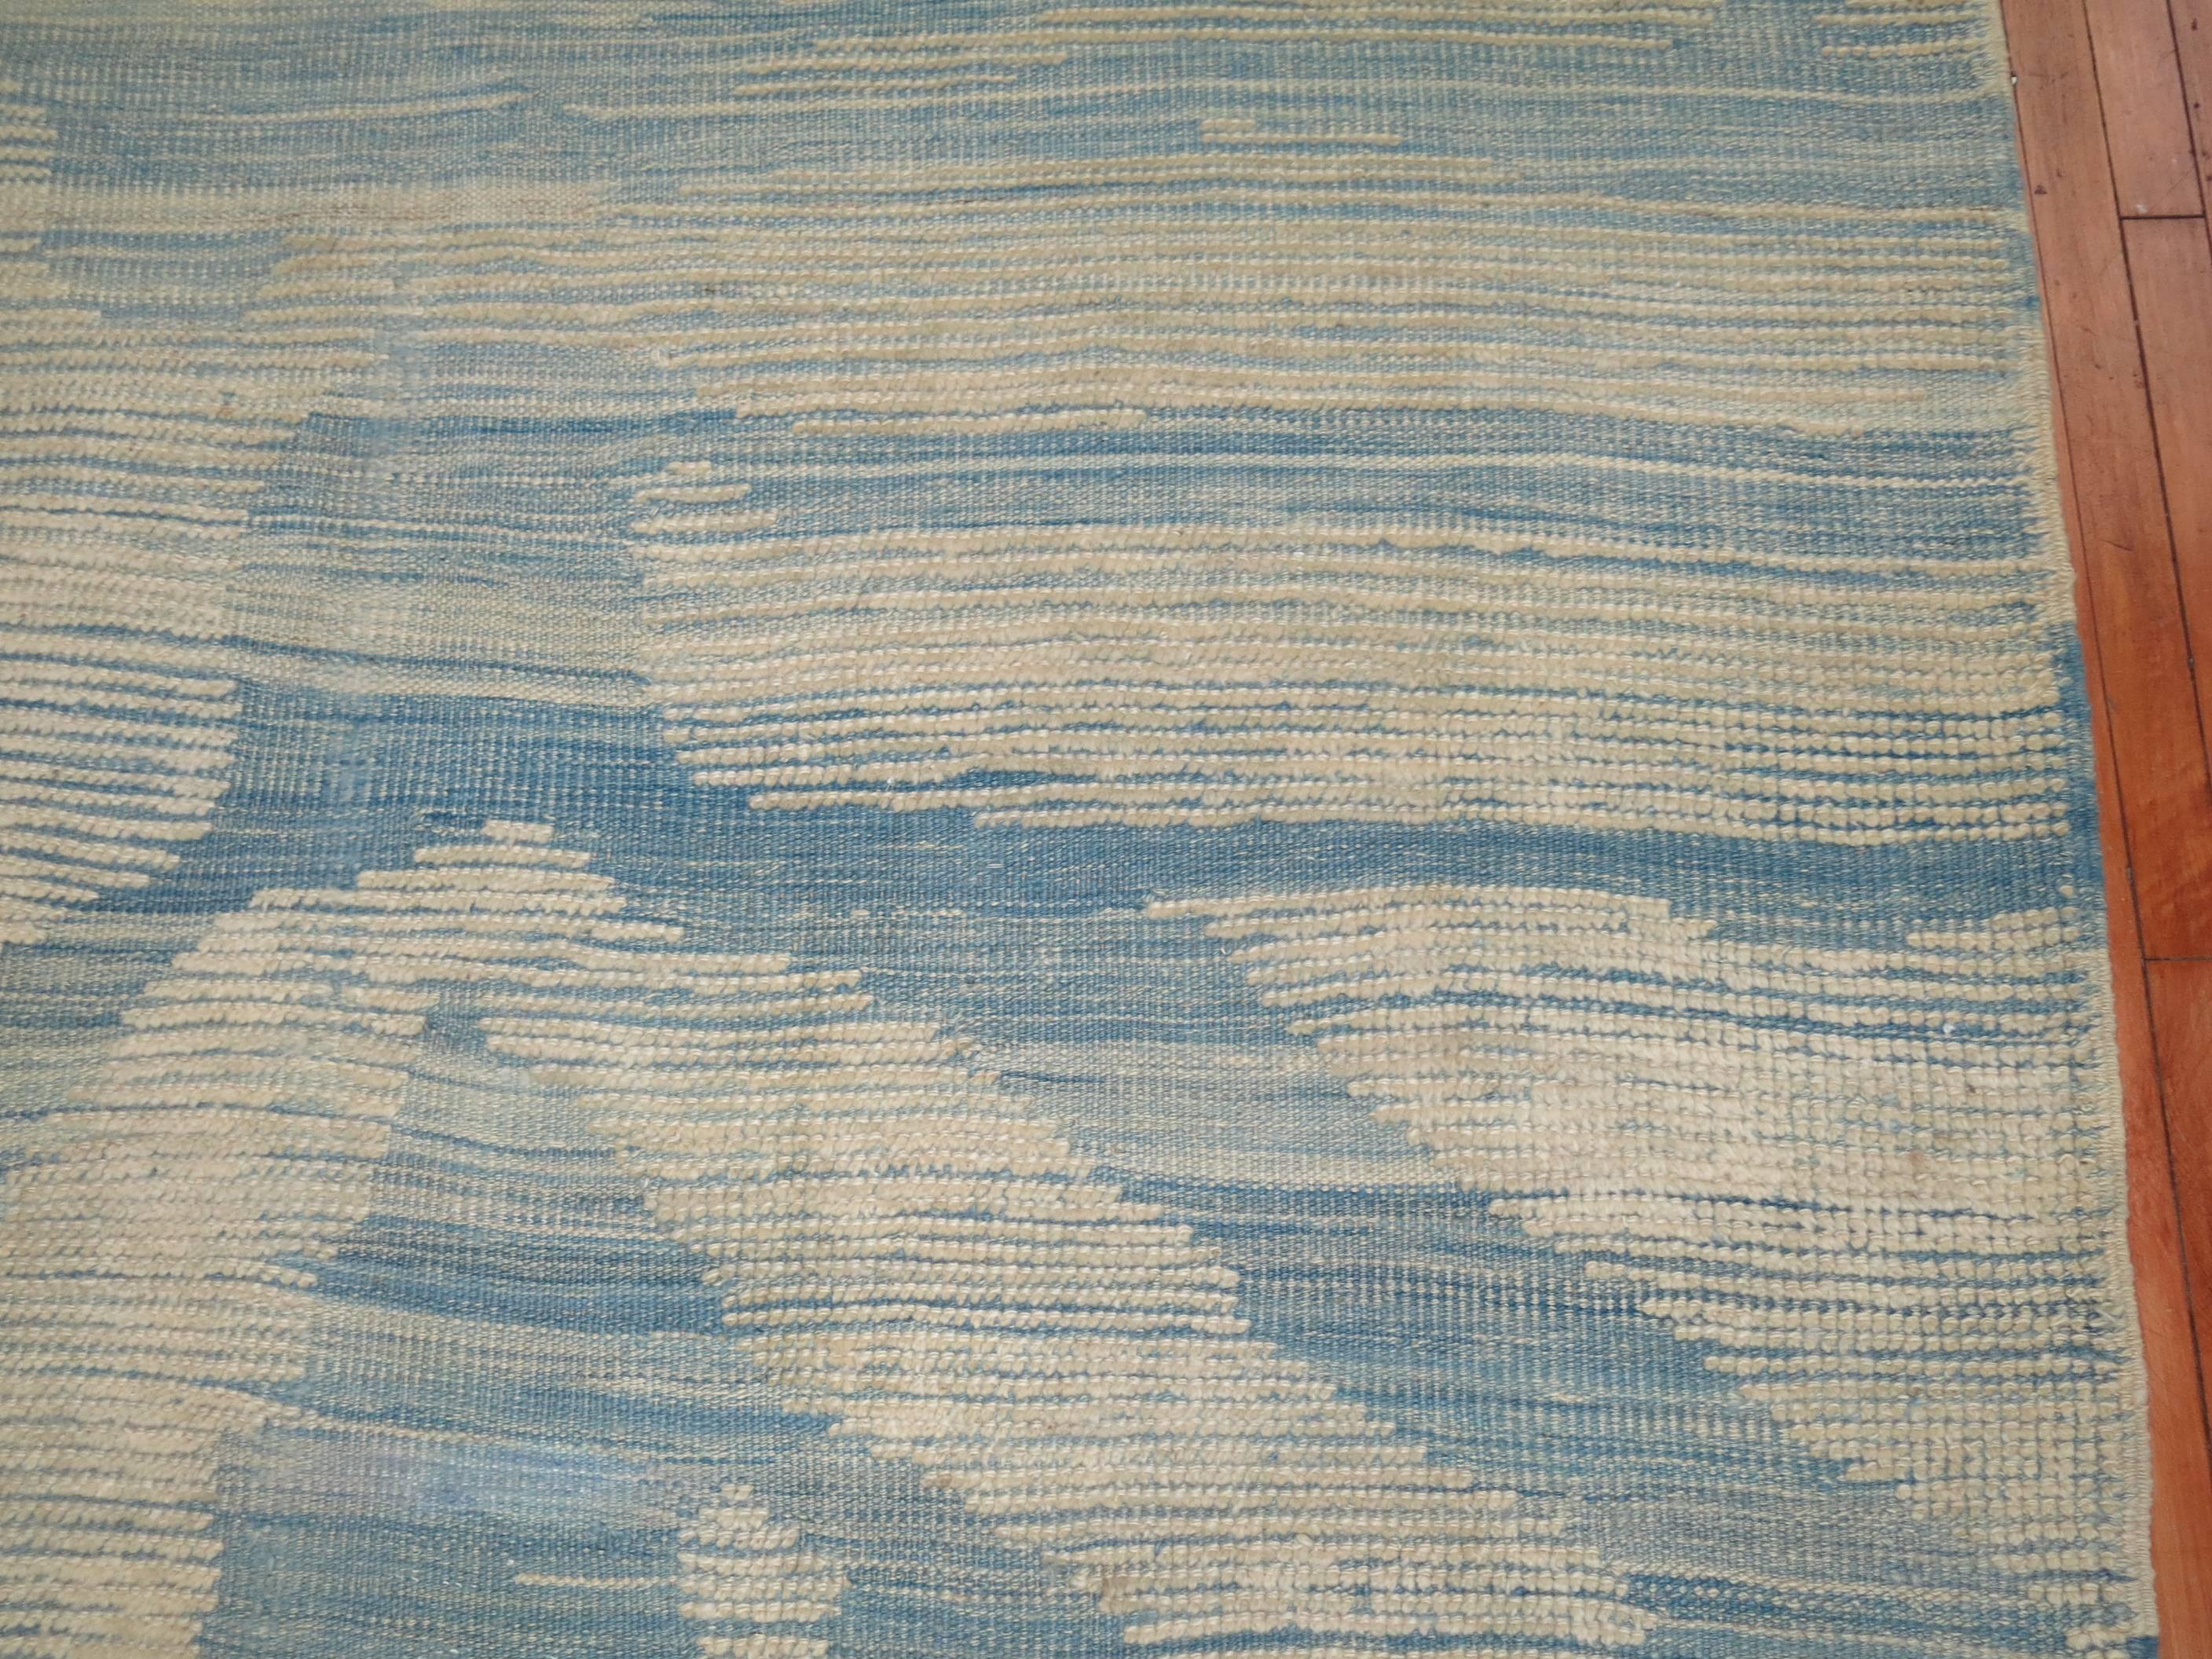 flat weave wool rug